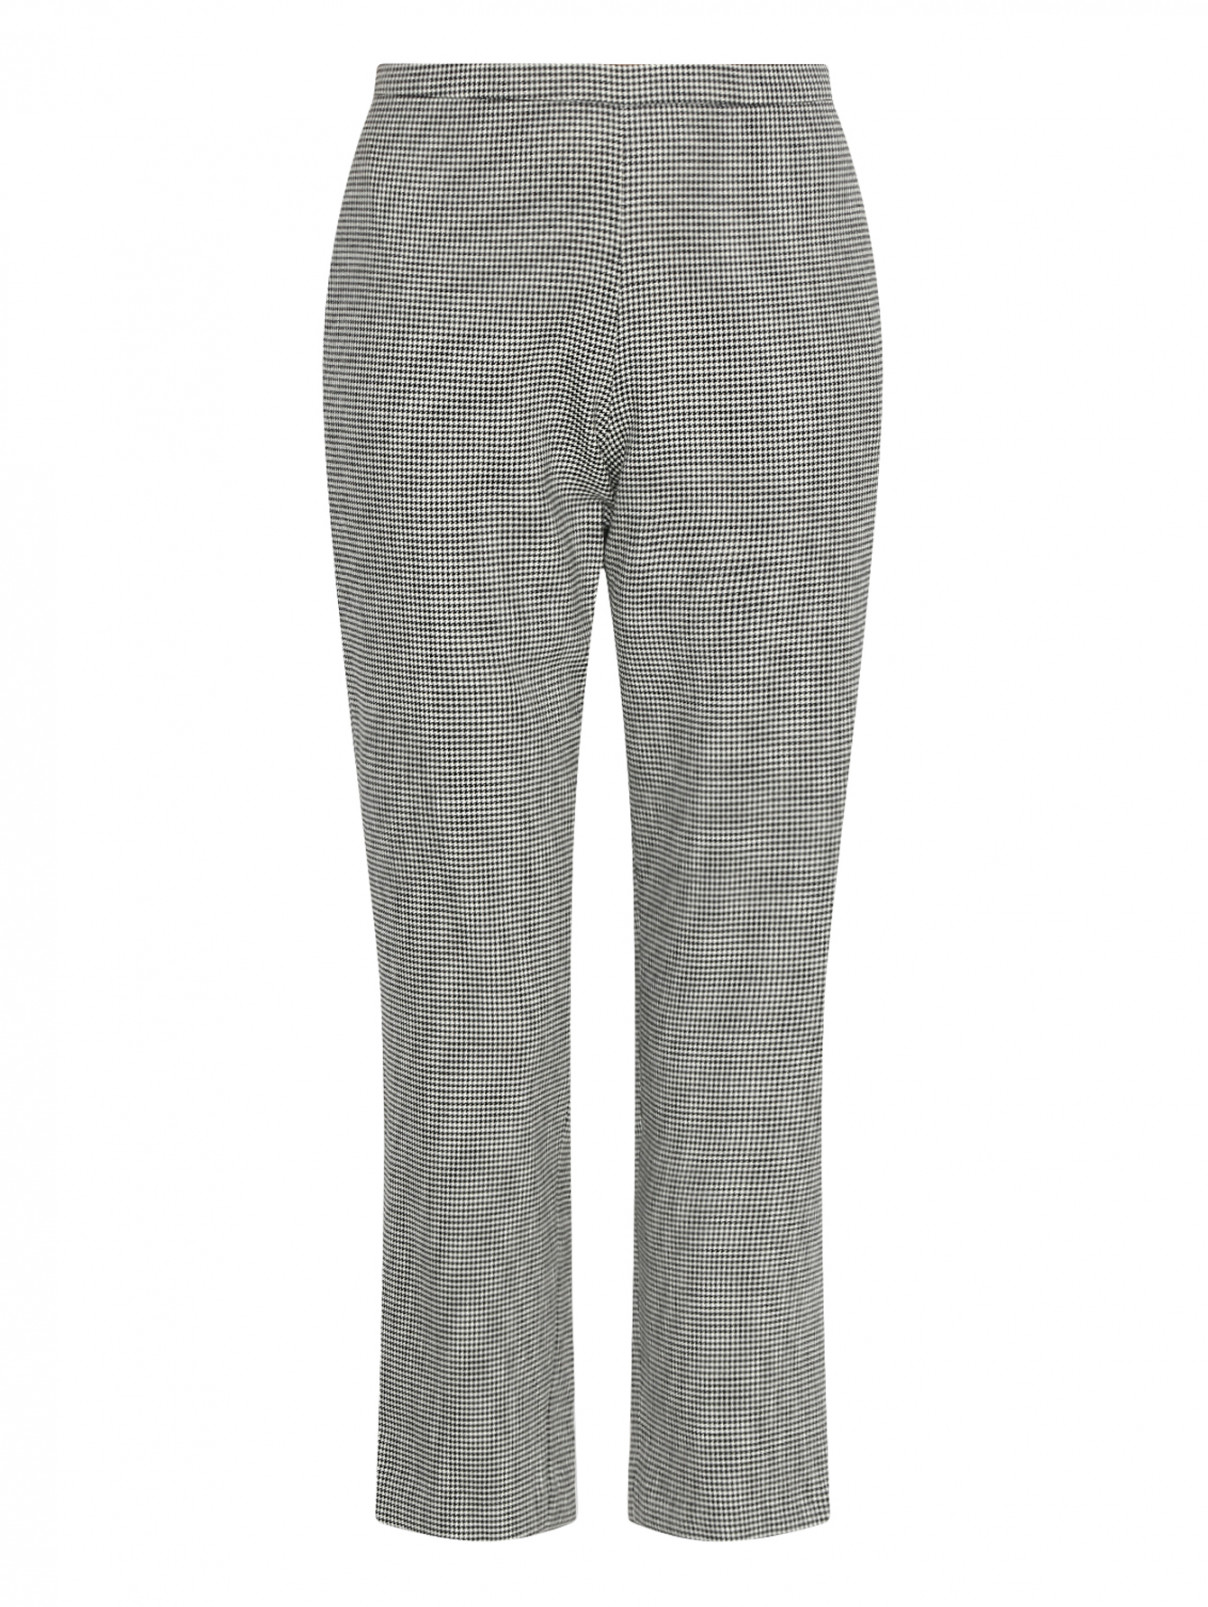 Укороченные брюки из шерсти с боковыми карманами Antonio Marras  –  Общий вид  – Цвет:  Узор